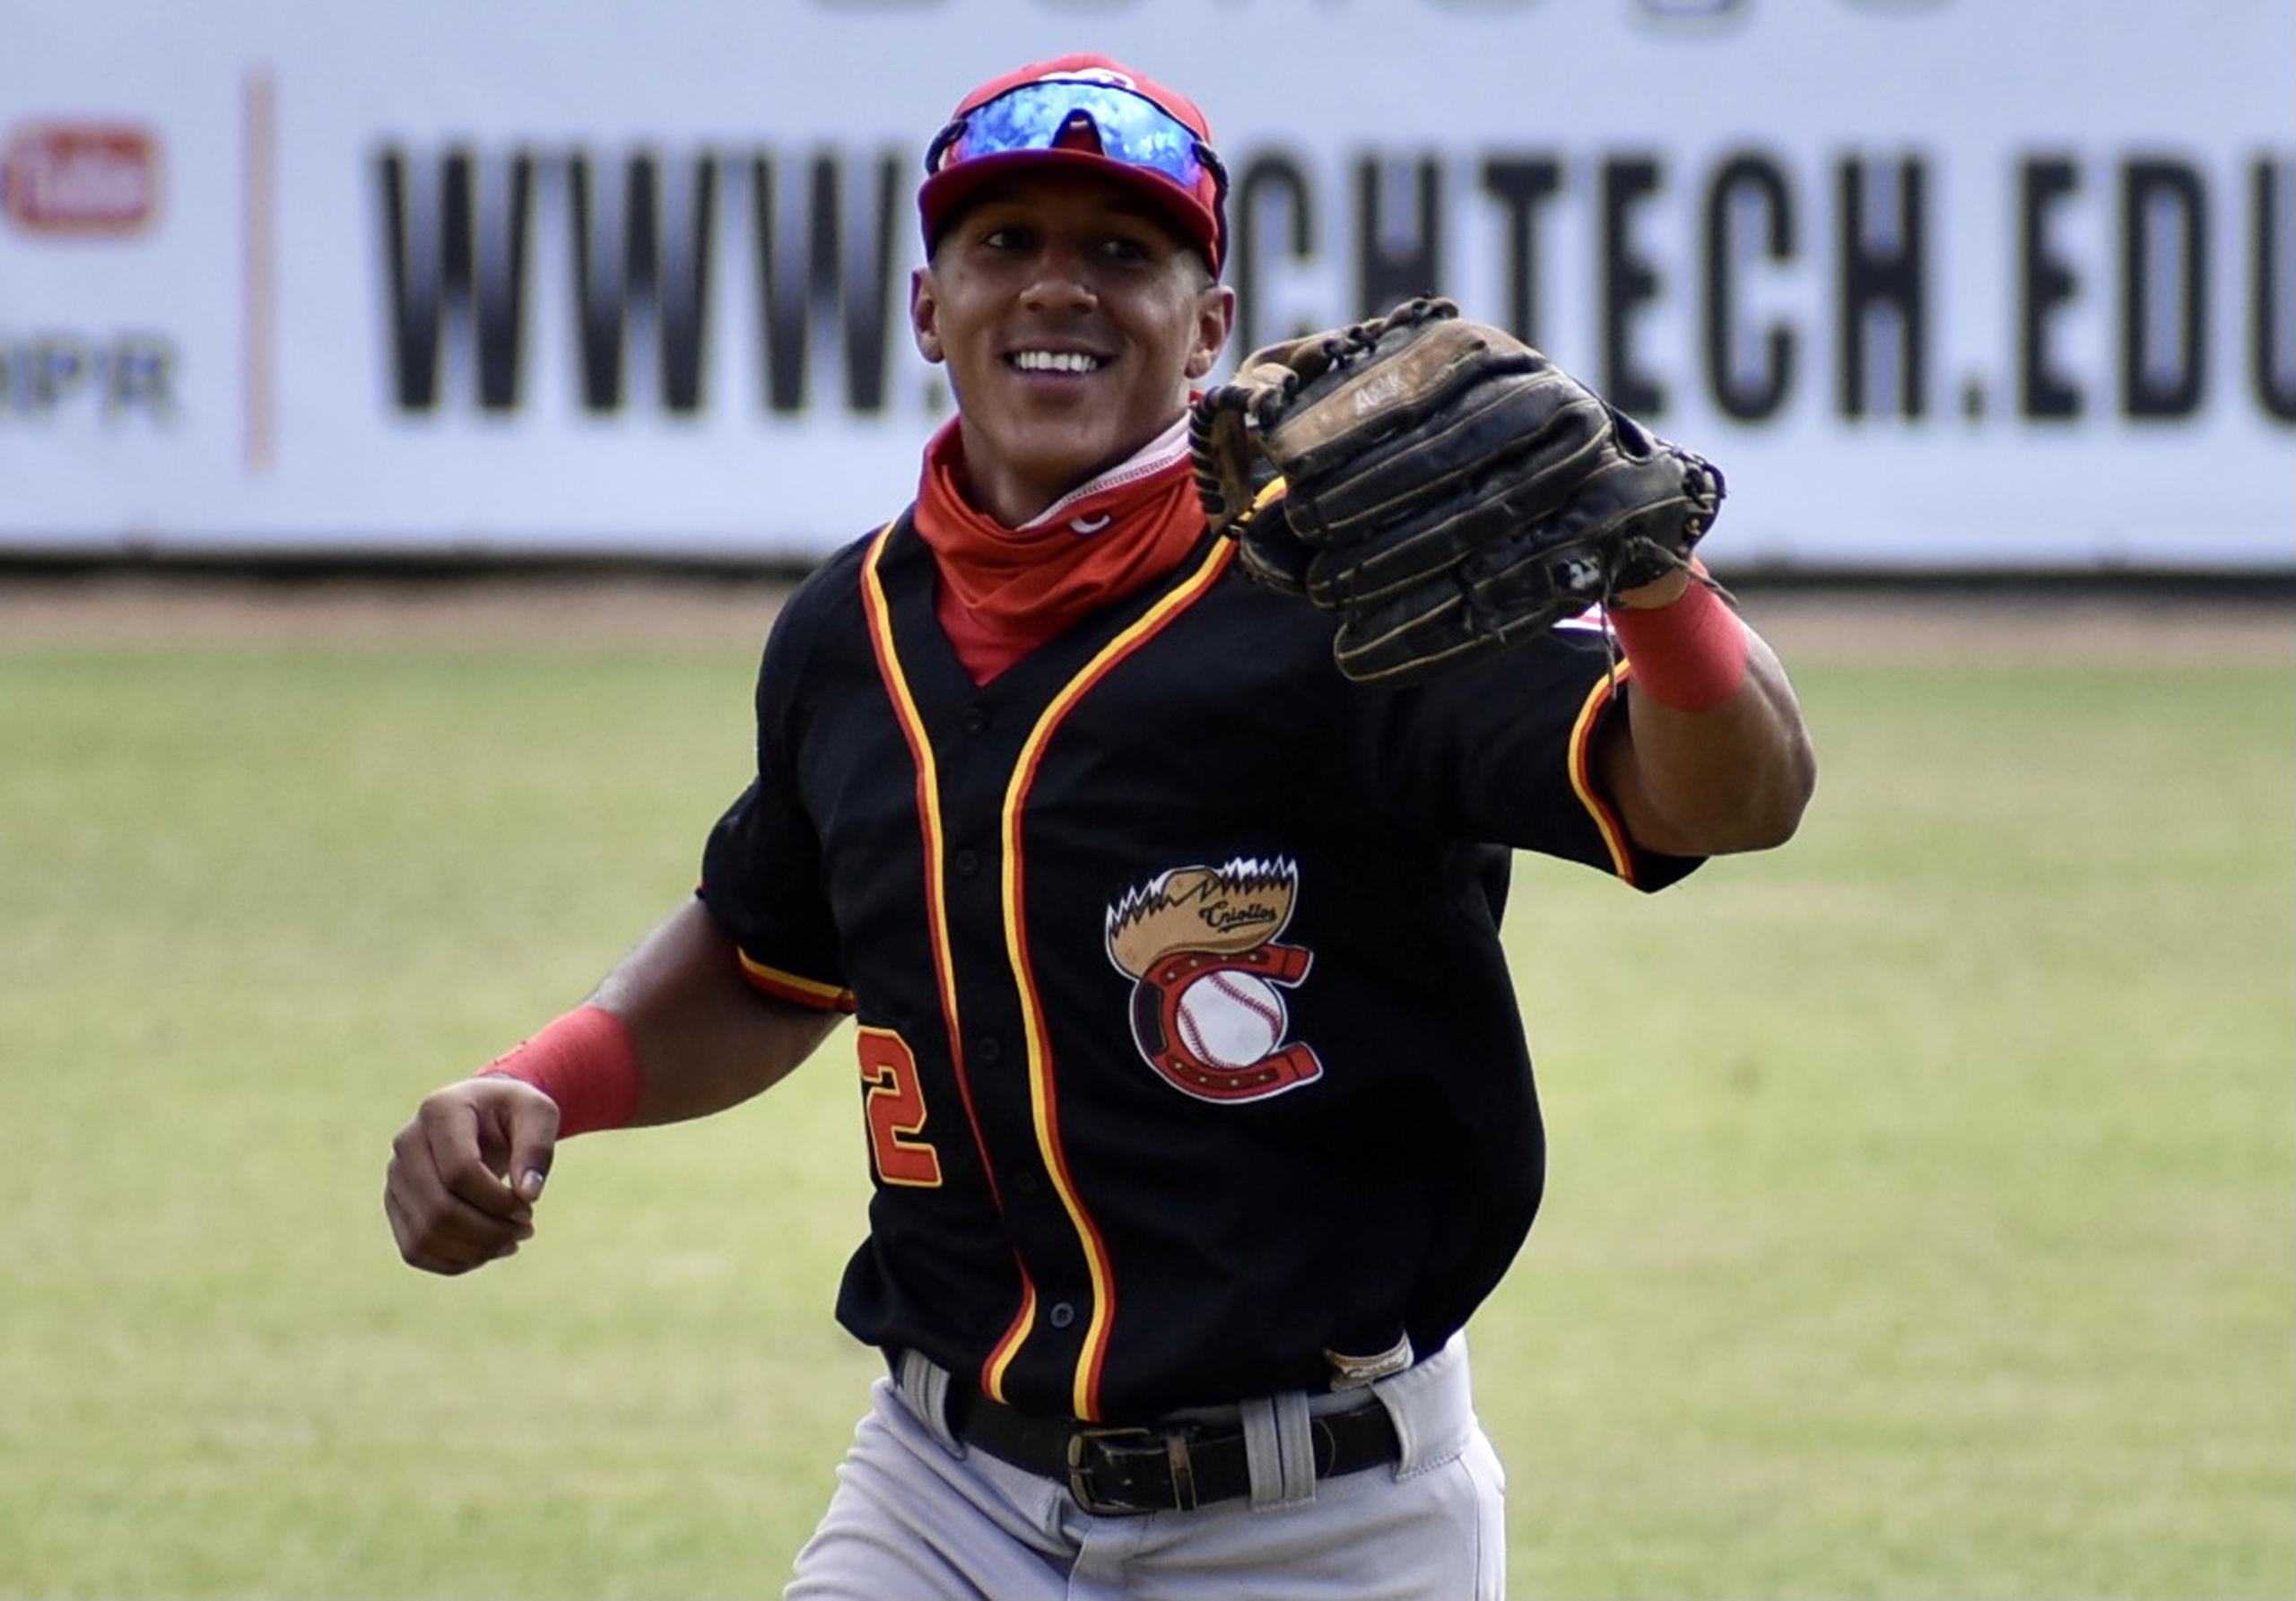 El jardinero Johneshwy Fargas, de los Criollos de Caguas, fue seleccionado de manera unánime como Jugador Más Valioso de la campaña 2020-21 de la Liga de Béisbol Profesional Roberto Clemente (Lbprc).